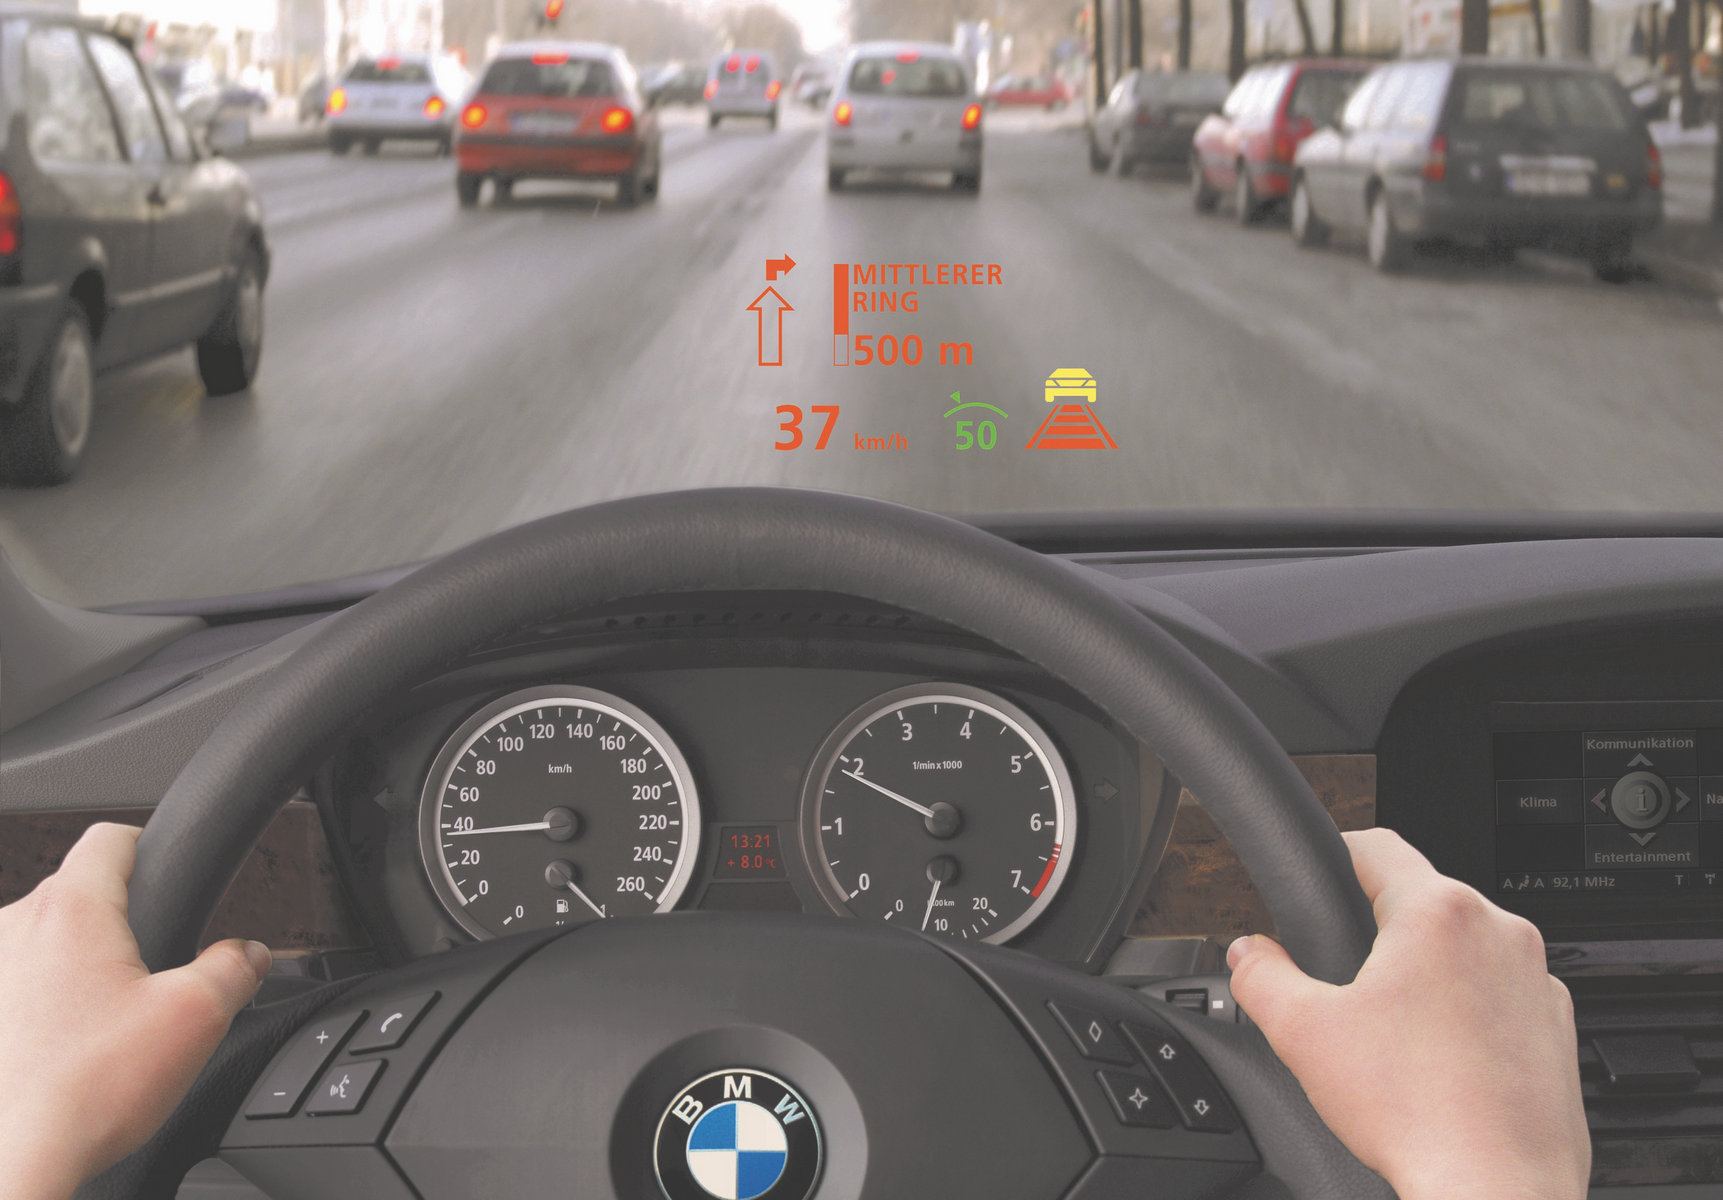 全新BMW iDrive系统亮相2021年北美消费电子展